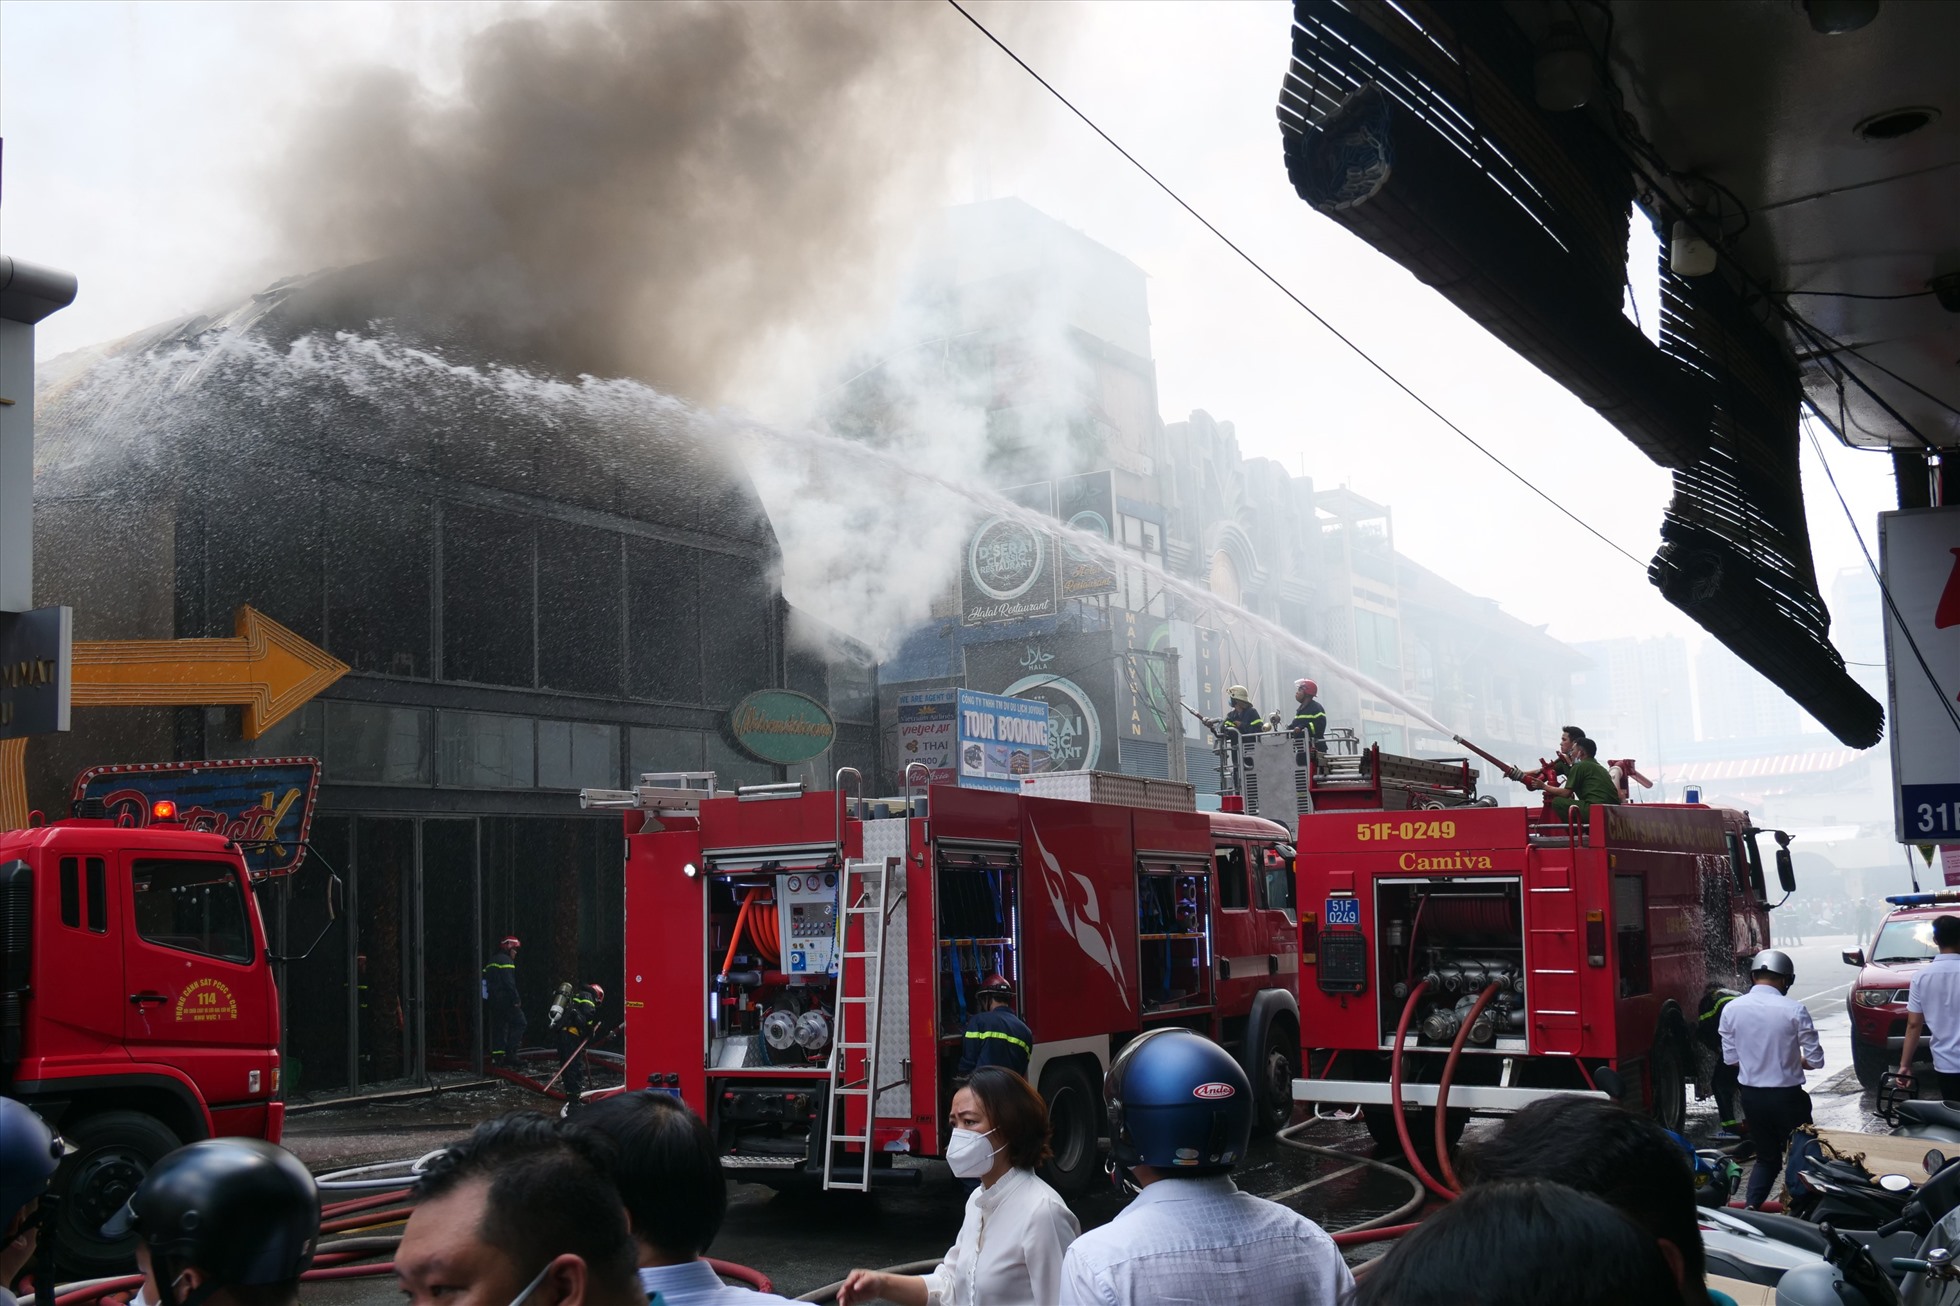 Vụ cháy xảy ra vào khoảng 9h30 tại nhà hàng District K , đường Thủ Khoa Huân, quận 1. Ngọn lửa bùng phát rồi nhanh chóng lan rộng, khói đen phát ra bao trùm cả khu vực.